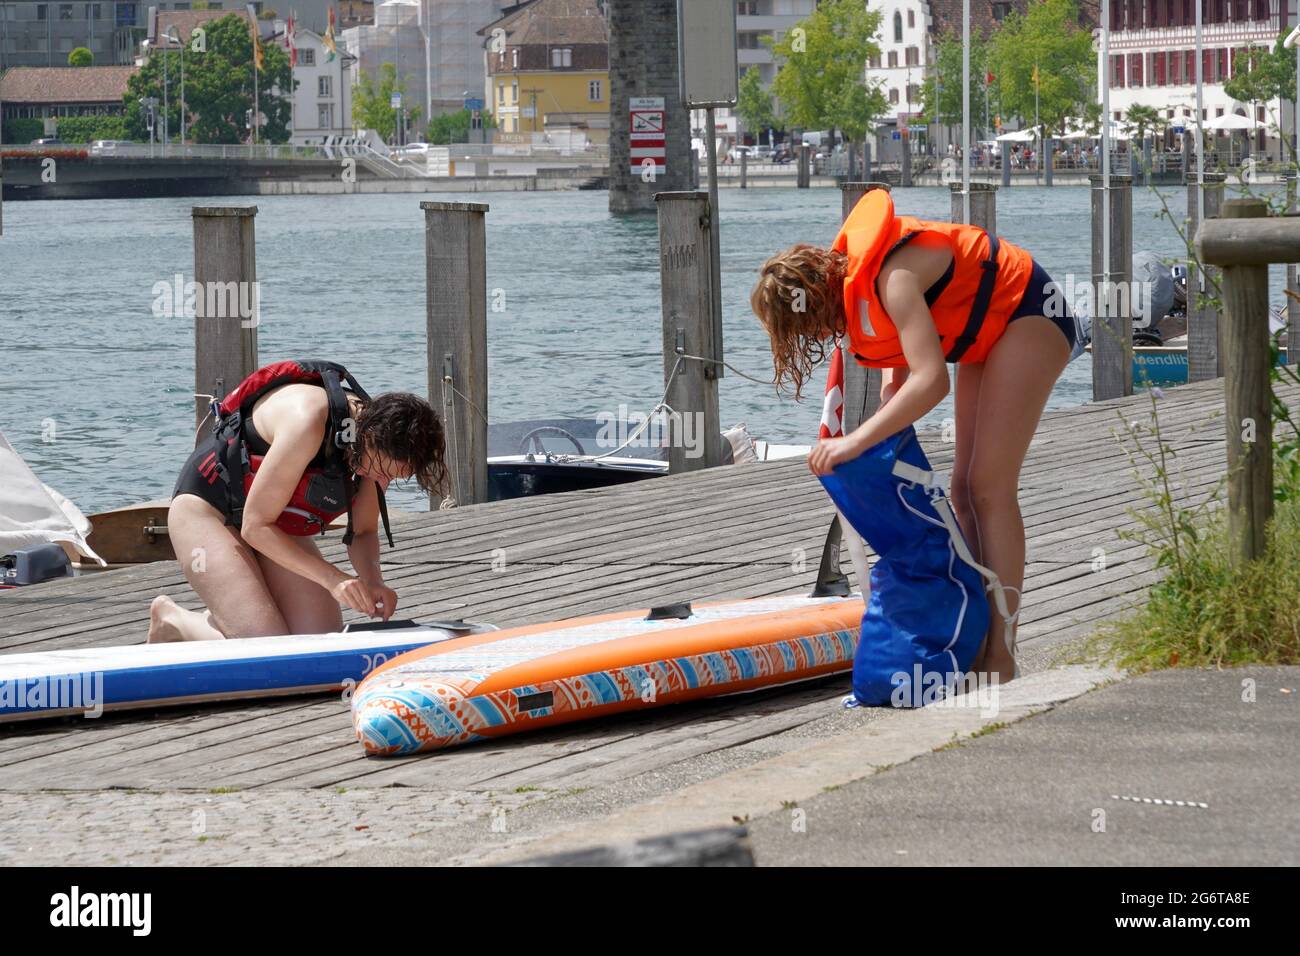 Zwei Frauen in Schwimmwesten packen ihre Stand Up Paddle Boards nach einer Fahrt auf dem Rhein in Schaffhausen Schweiz. Sie befinden sich am Flusspier. Stockfoto